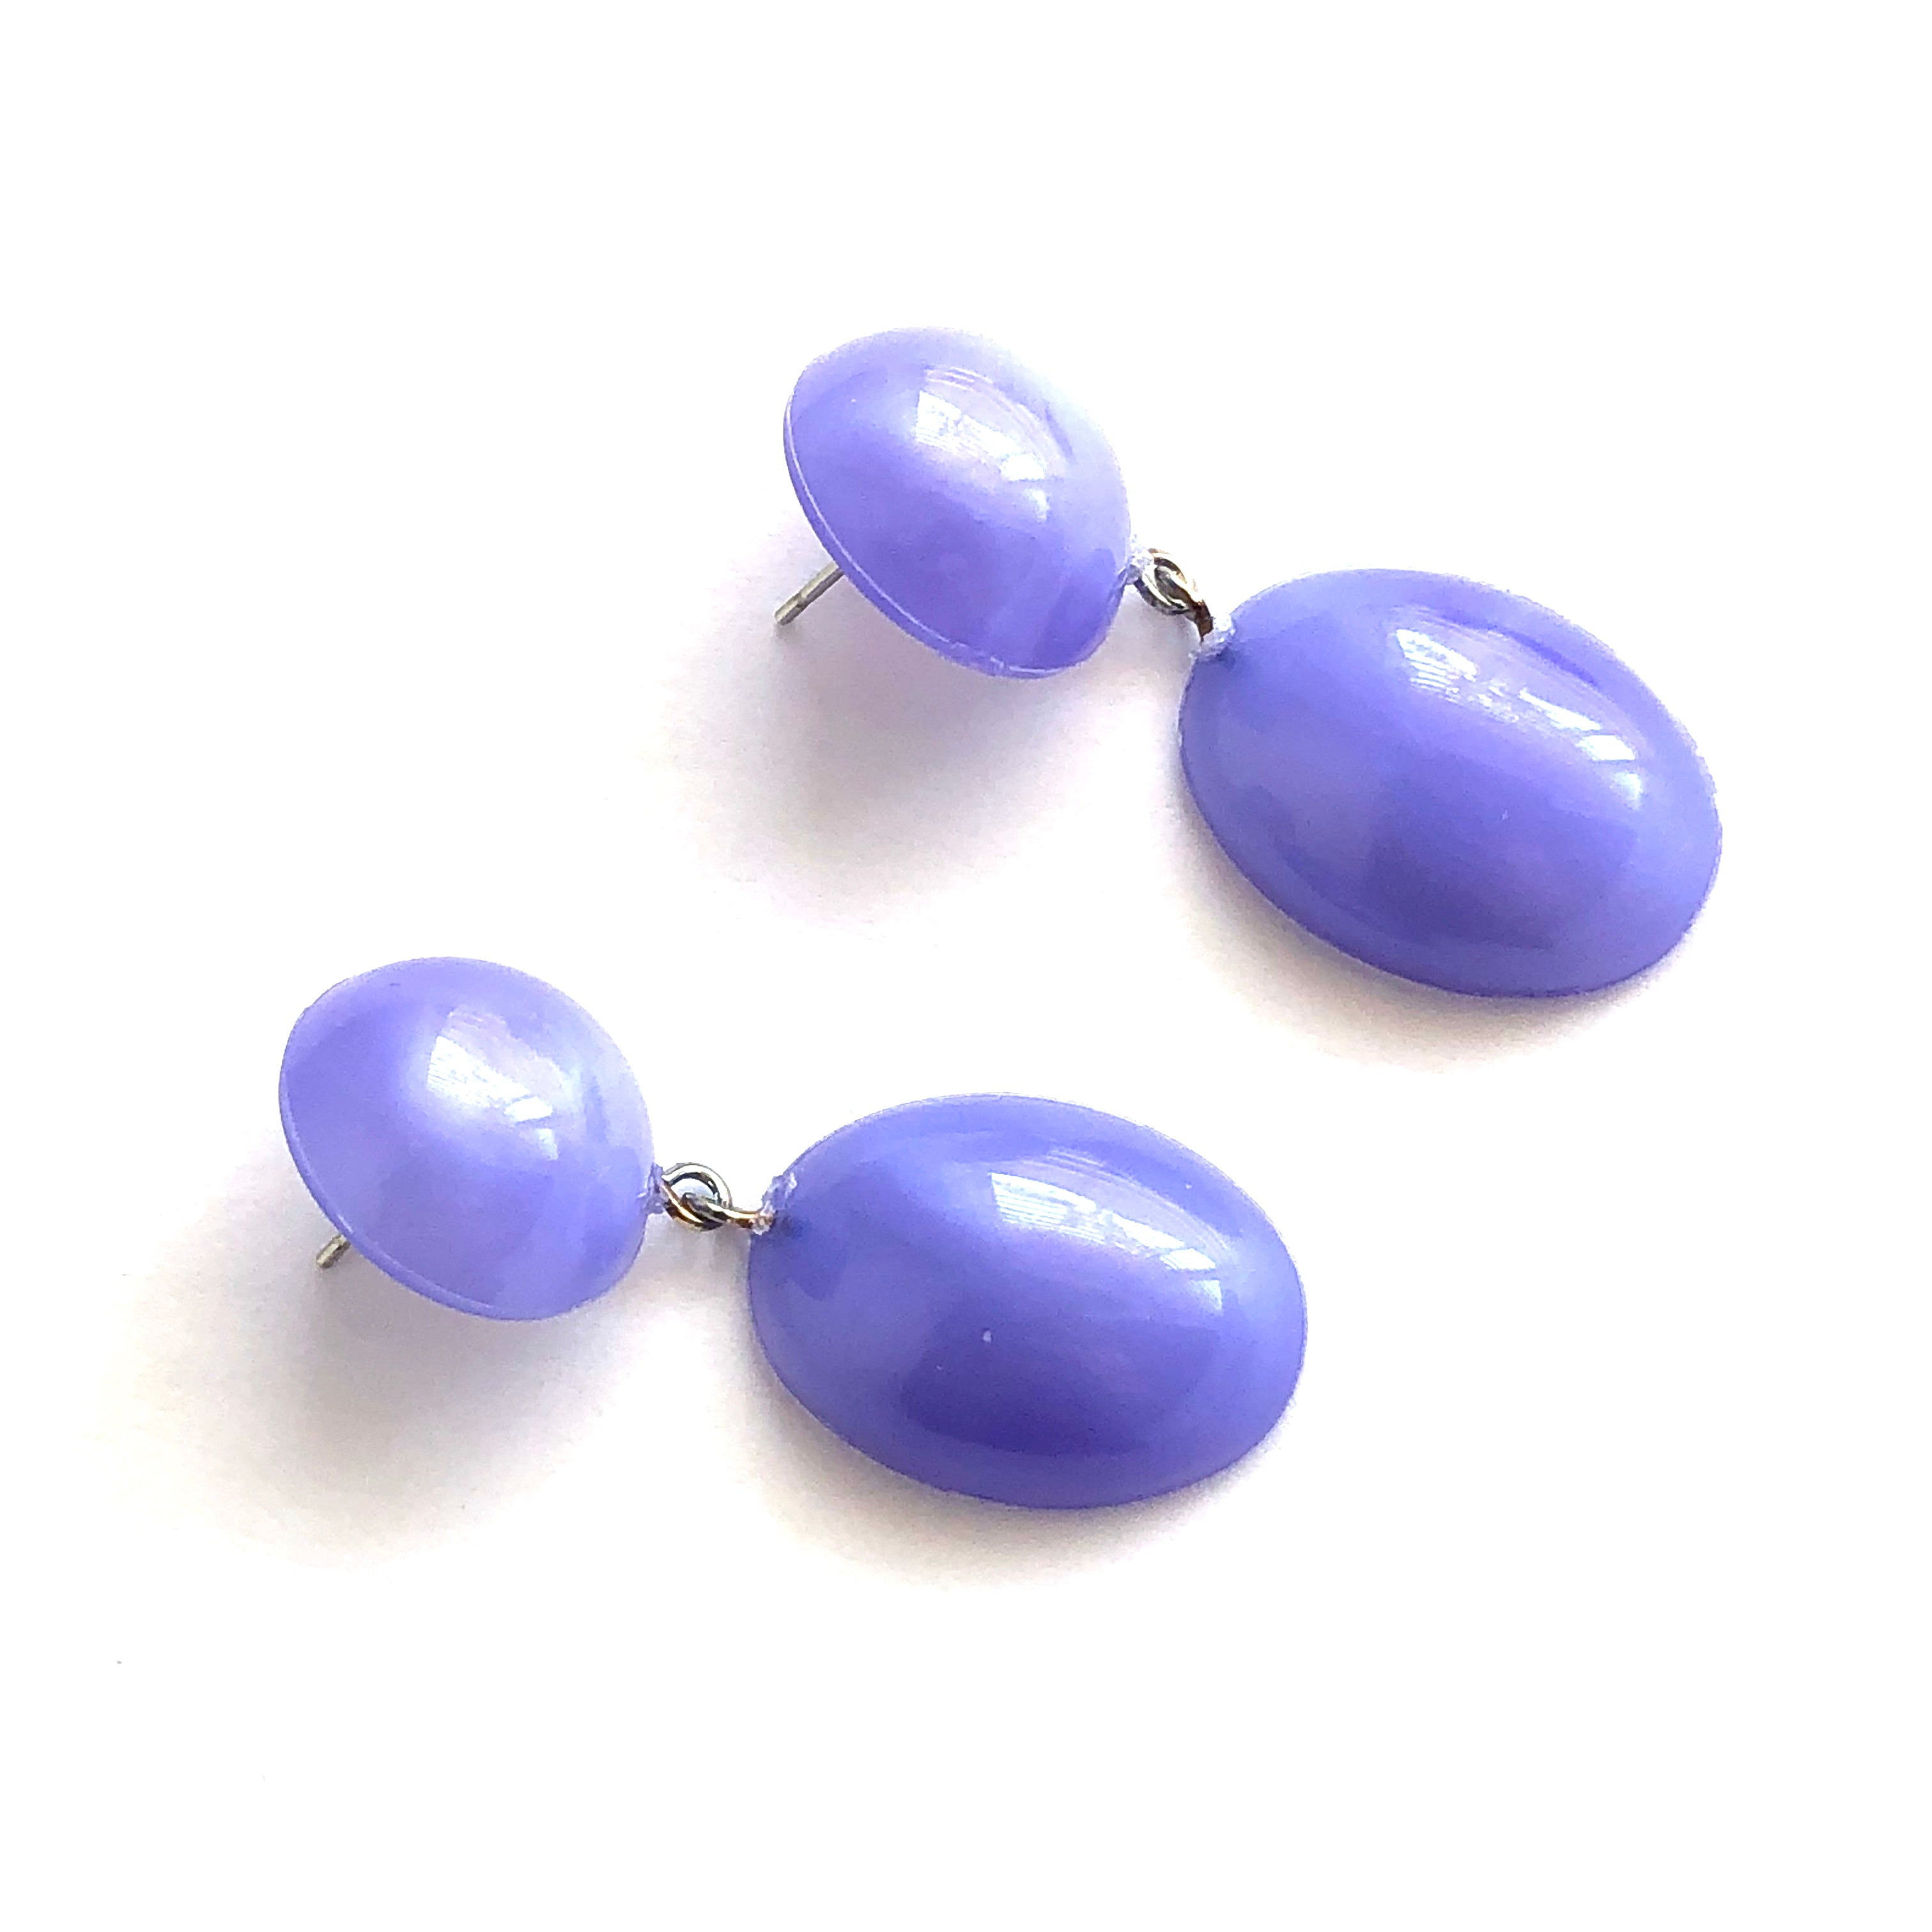 Lavender Aura Glow Jelly Bean Earrings